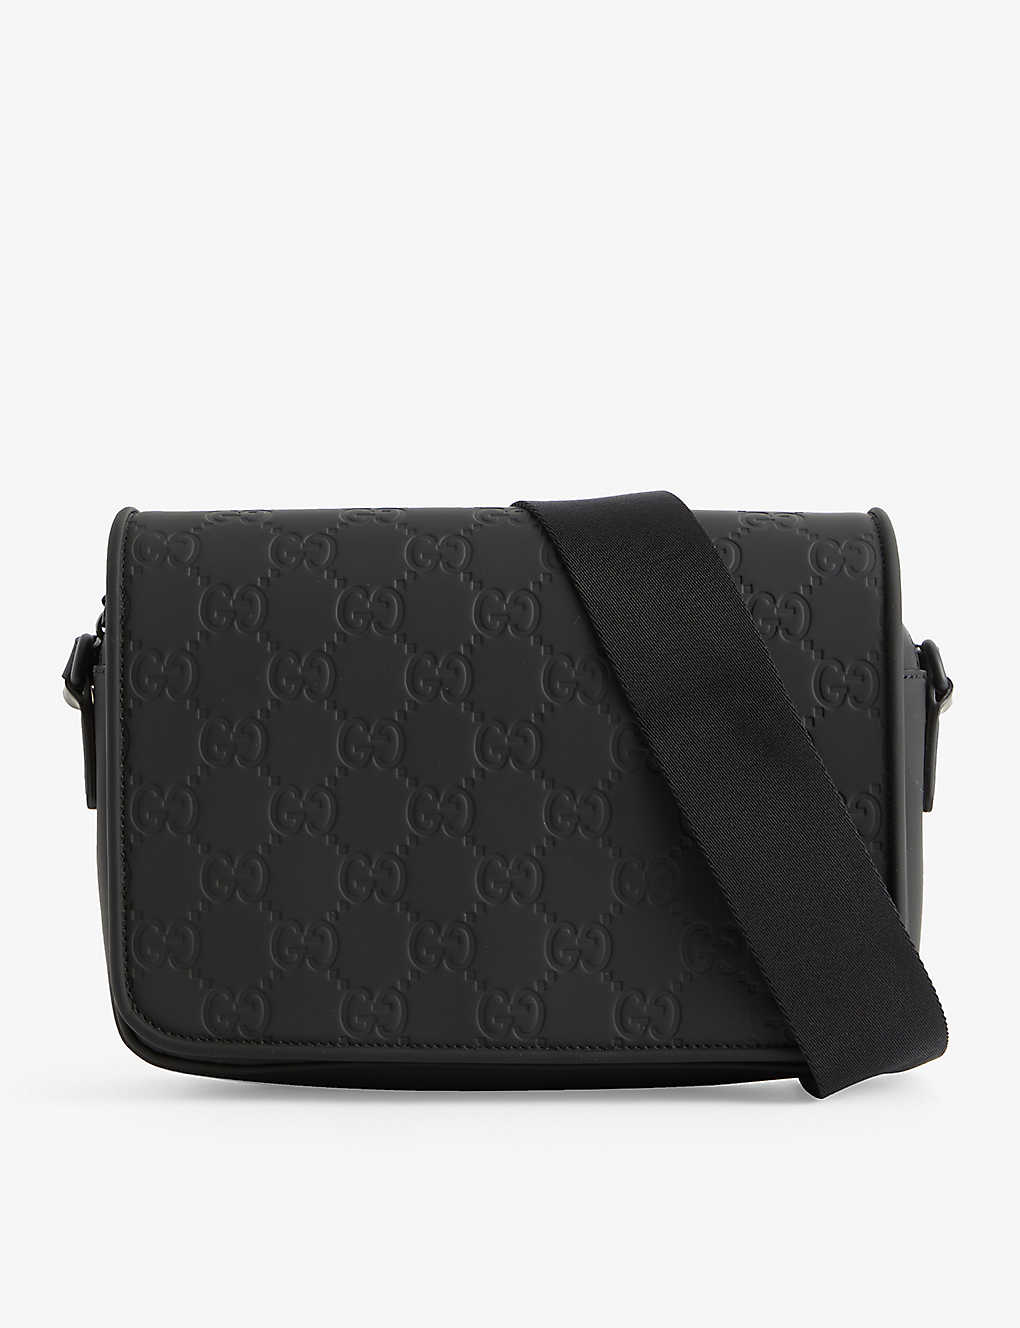 Gucci Monogram-debossed Leather Cross-body Bag In Black/black/black